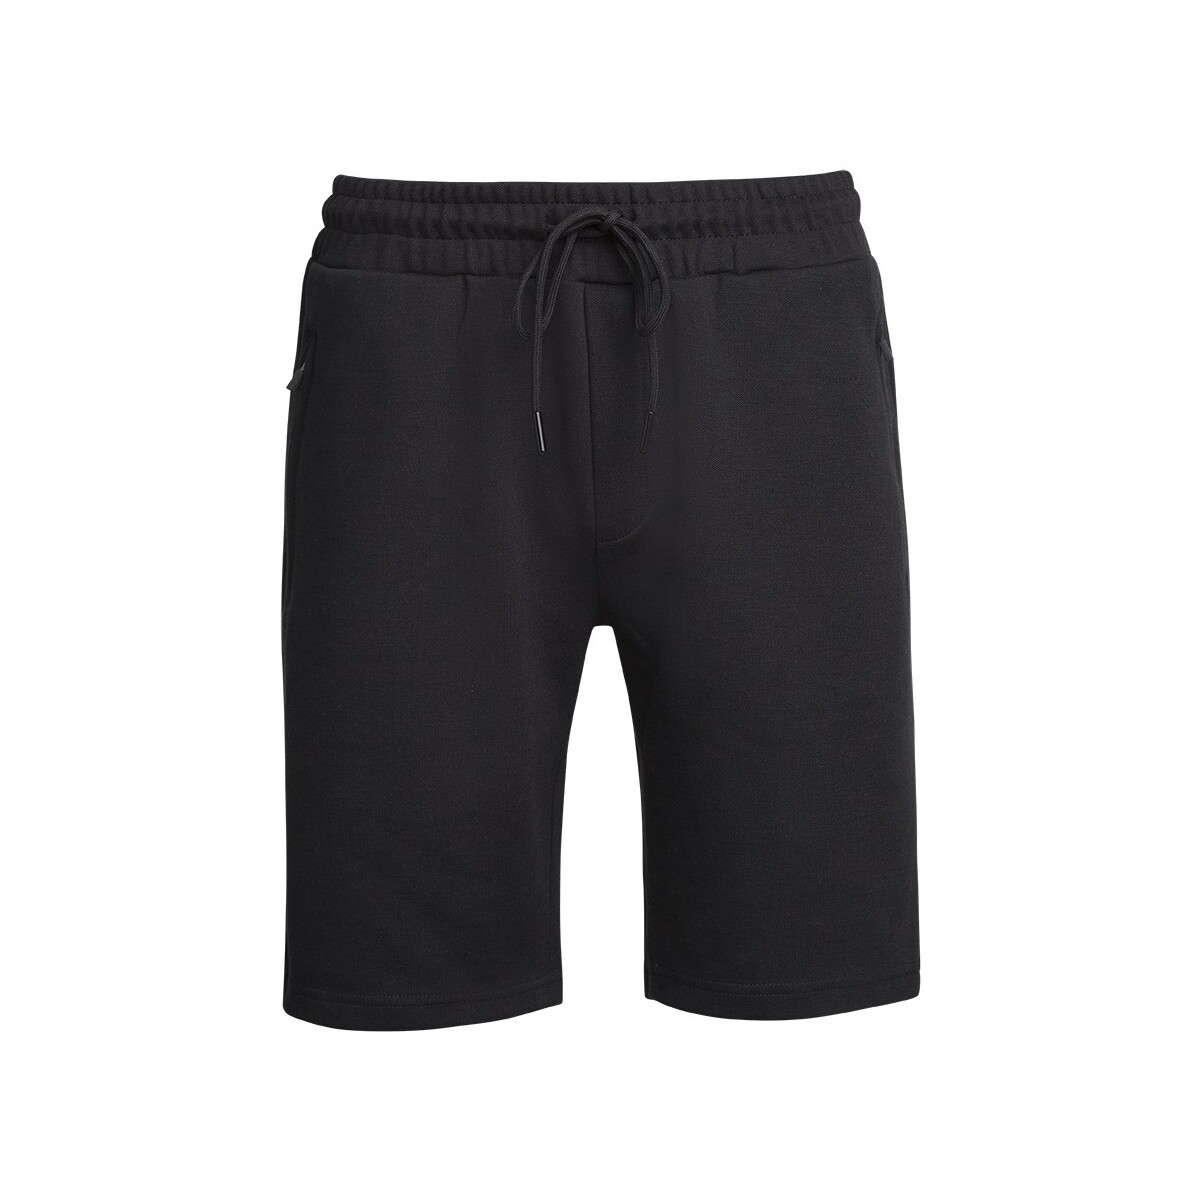 Textiel Heren Korte broeken / Bermuda's Mario Russo Pique Short Zwart